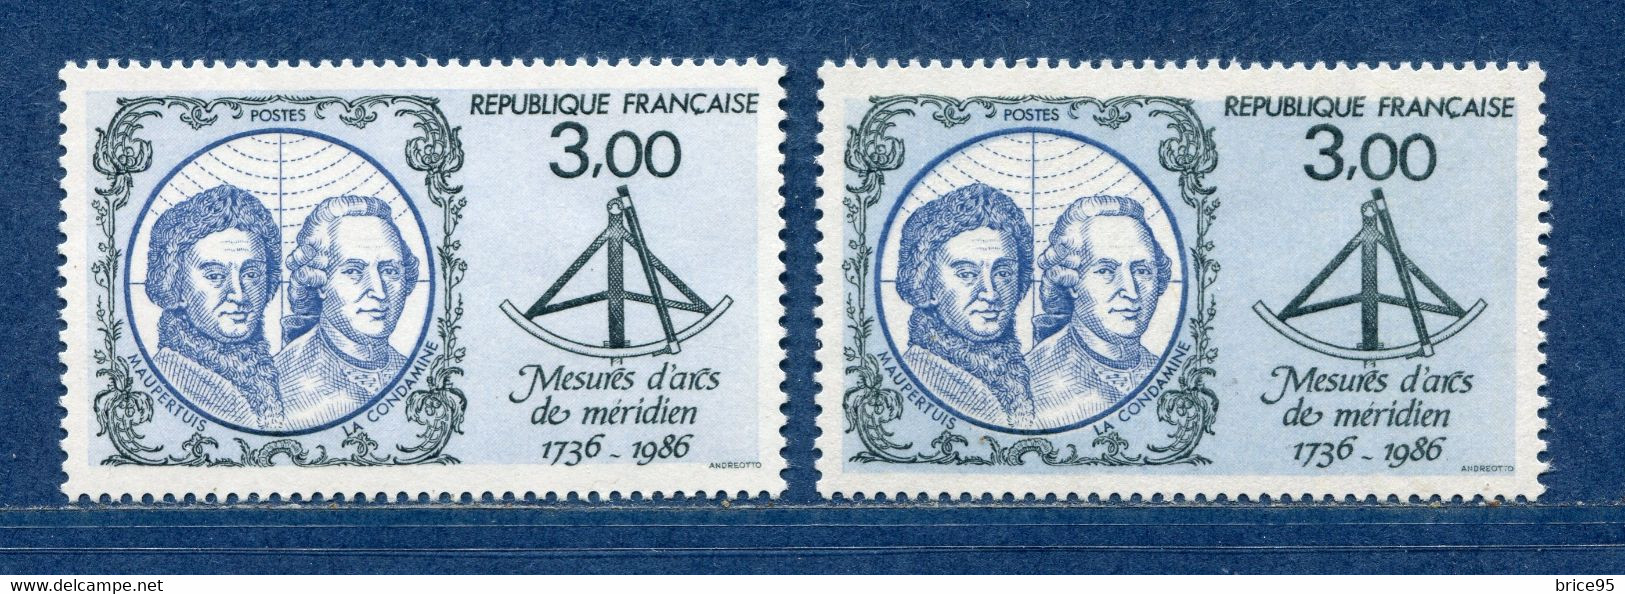 ⭐ France - Variété - YT N° 2428 - Couleurs - Pétouilles - Neuf Sans Charnière - 1986 ⭐ - Unused Stamps